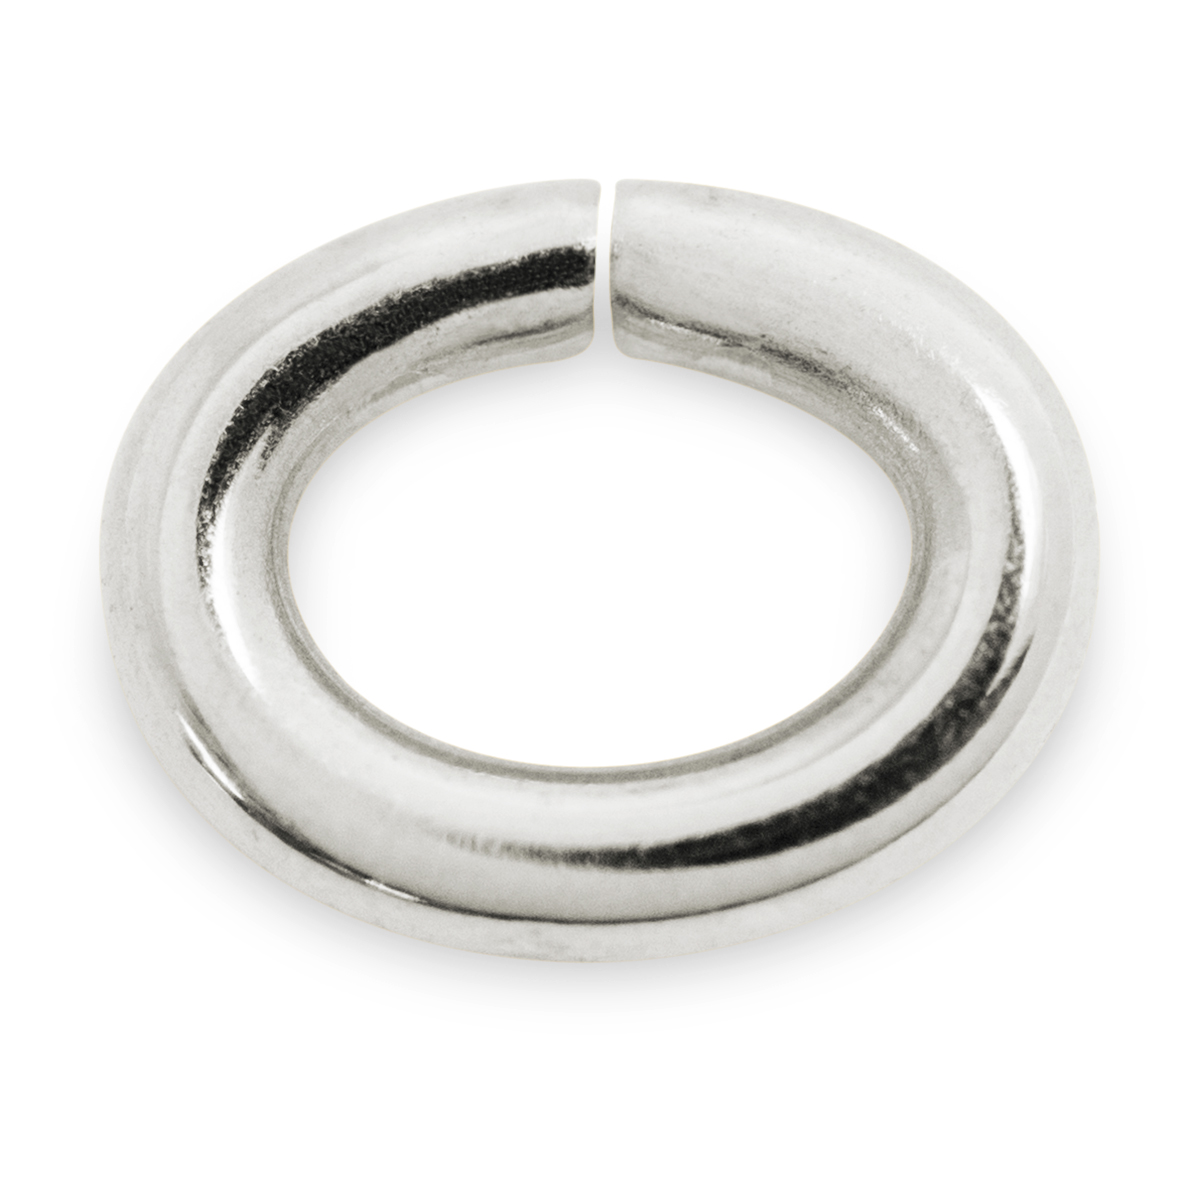 Binderinge, oval, 925/- Silber, Ø 8 mm, Stärke 1,2 mm